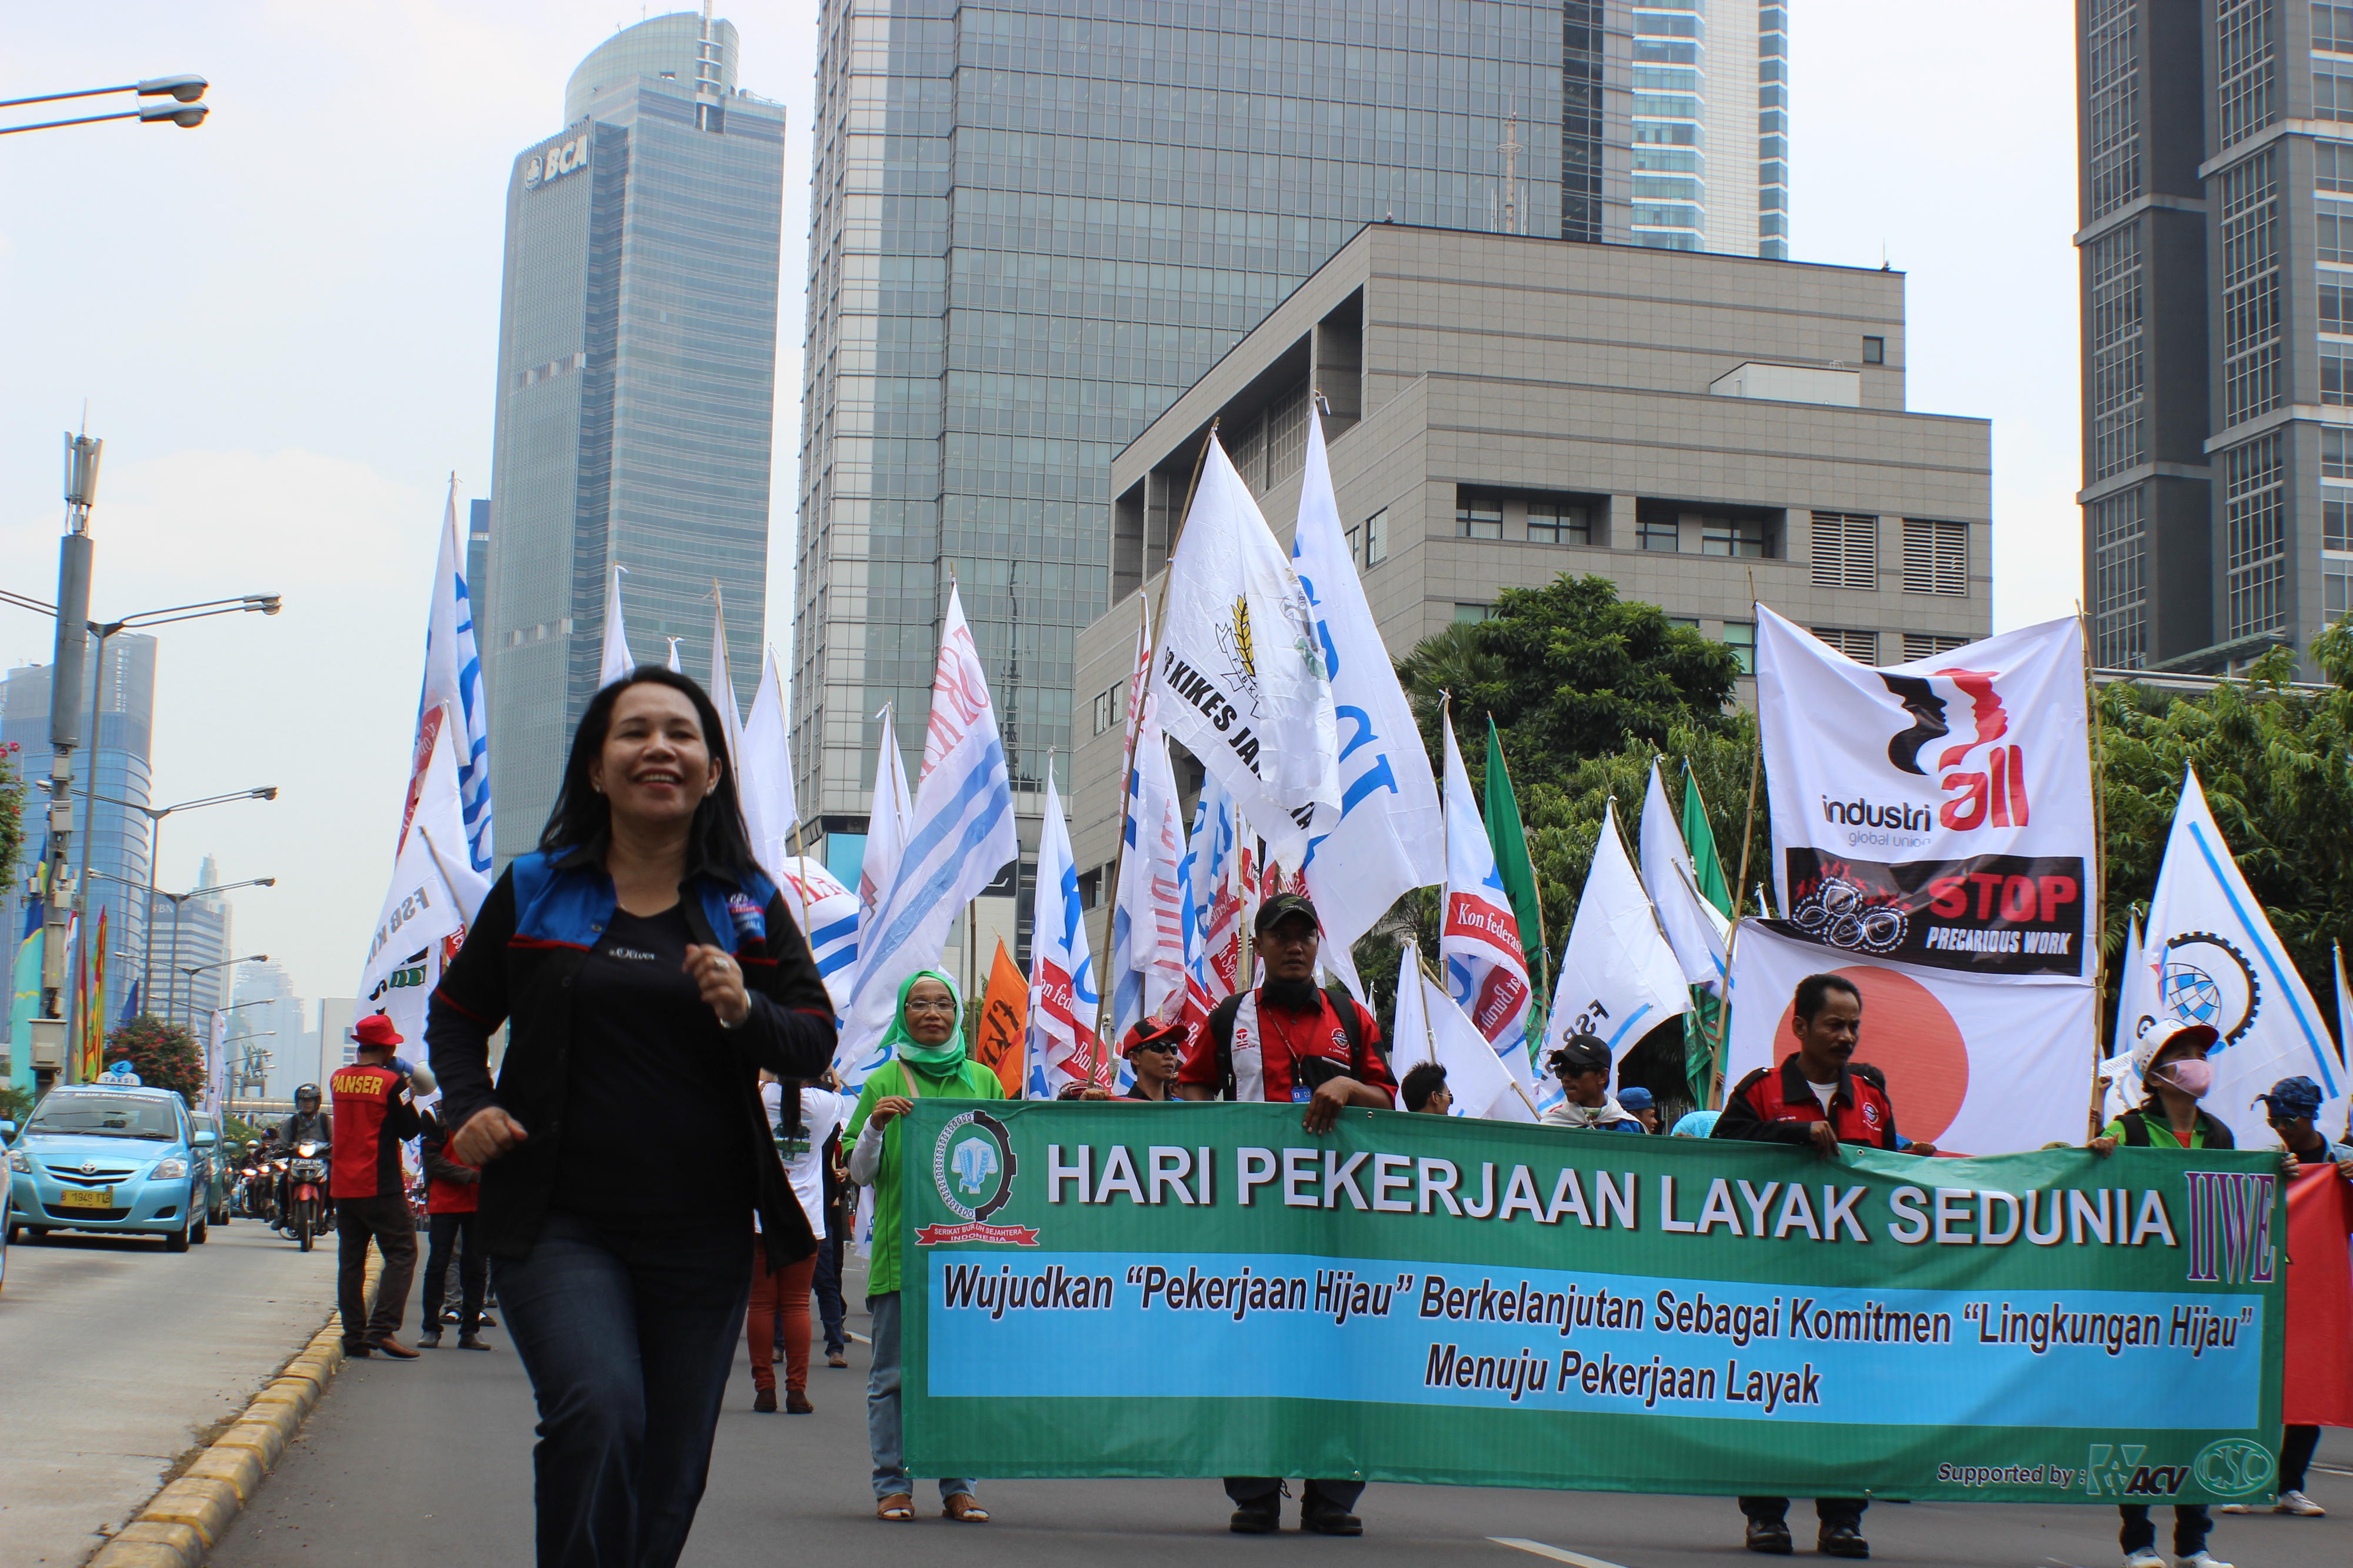 Textilarbeiter in Jakarta, Indonesien, fordern menschenwürdige Arbeit für alle.